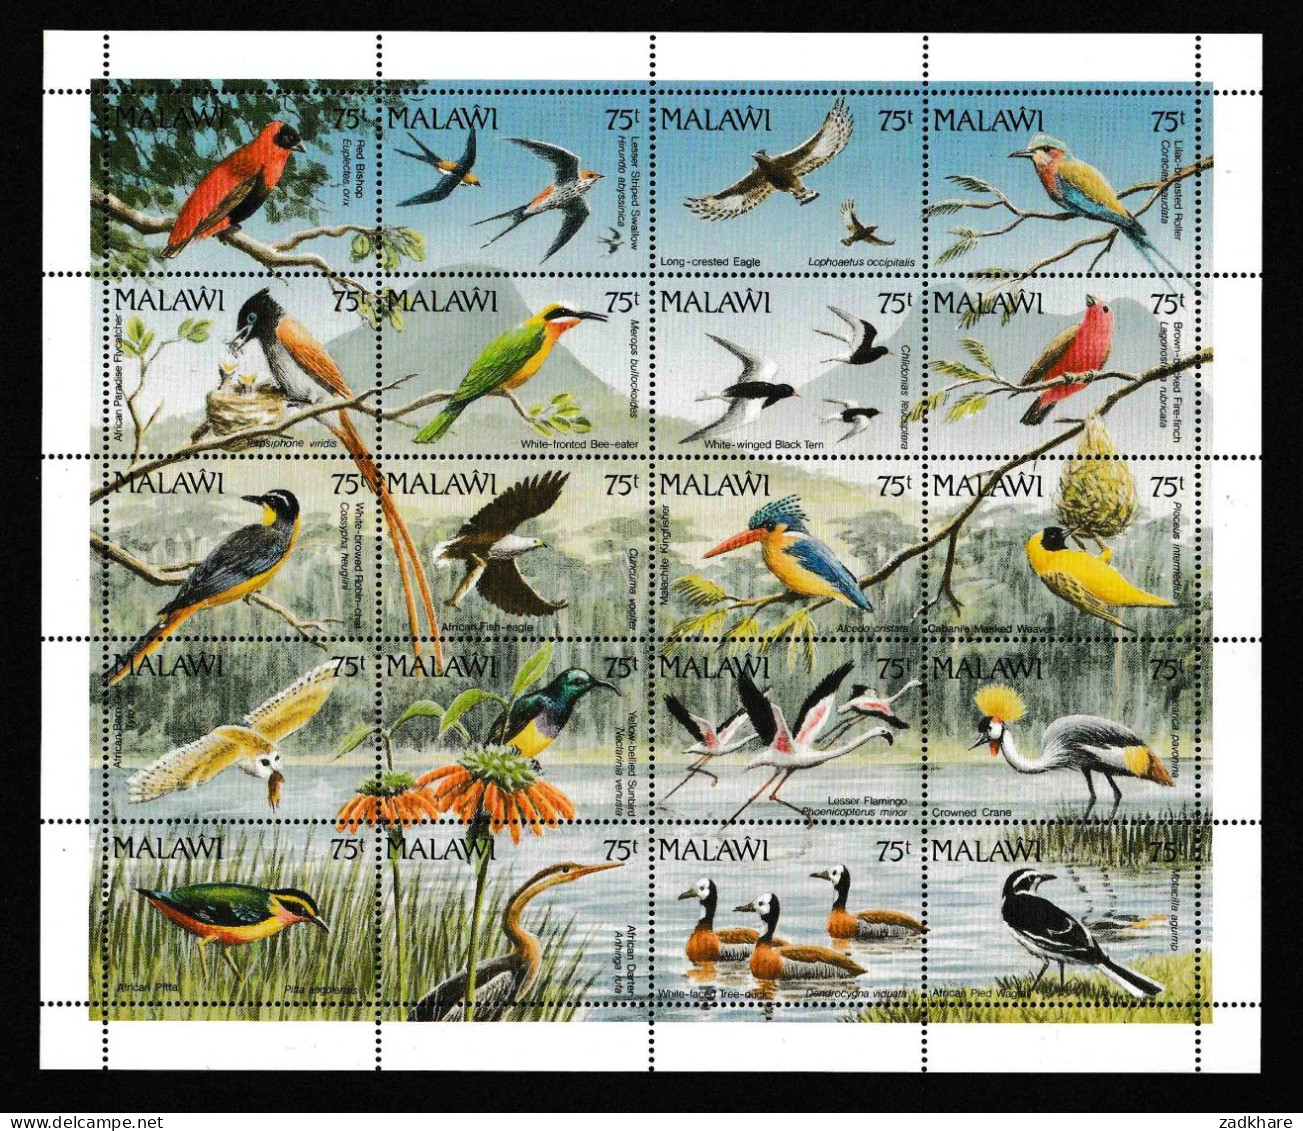 Malawi 1992 Birds Vögel Sheetlet Postfrisch MNH** - Malawi (1964-...)